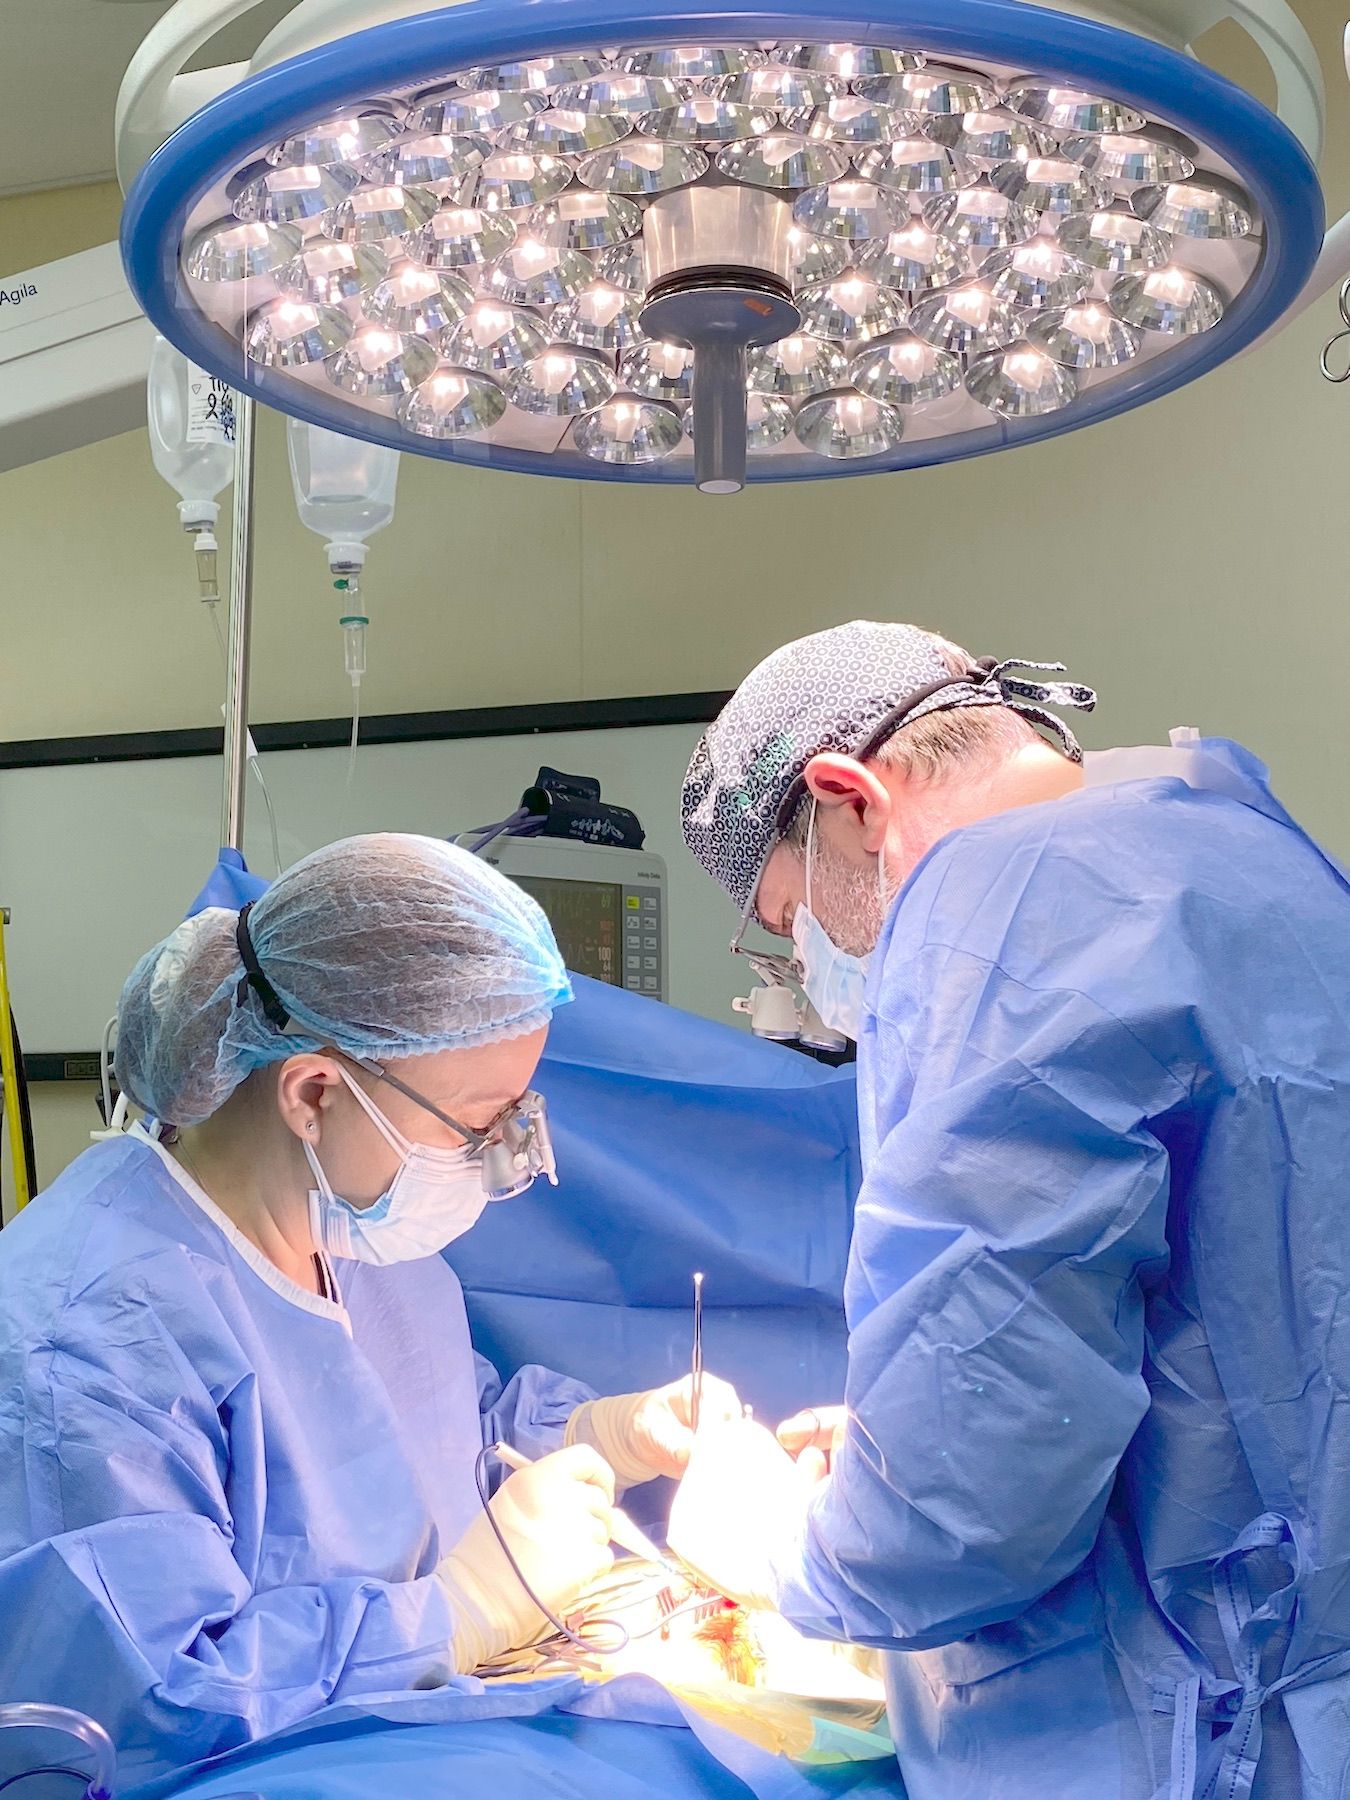 Chirurgie vasculară performantă | Spitalul Clinic SANADOR